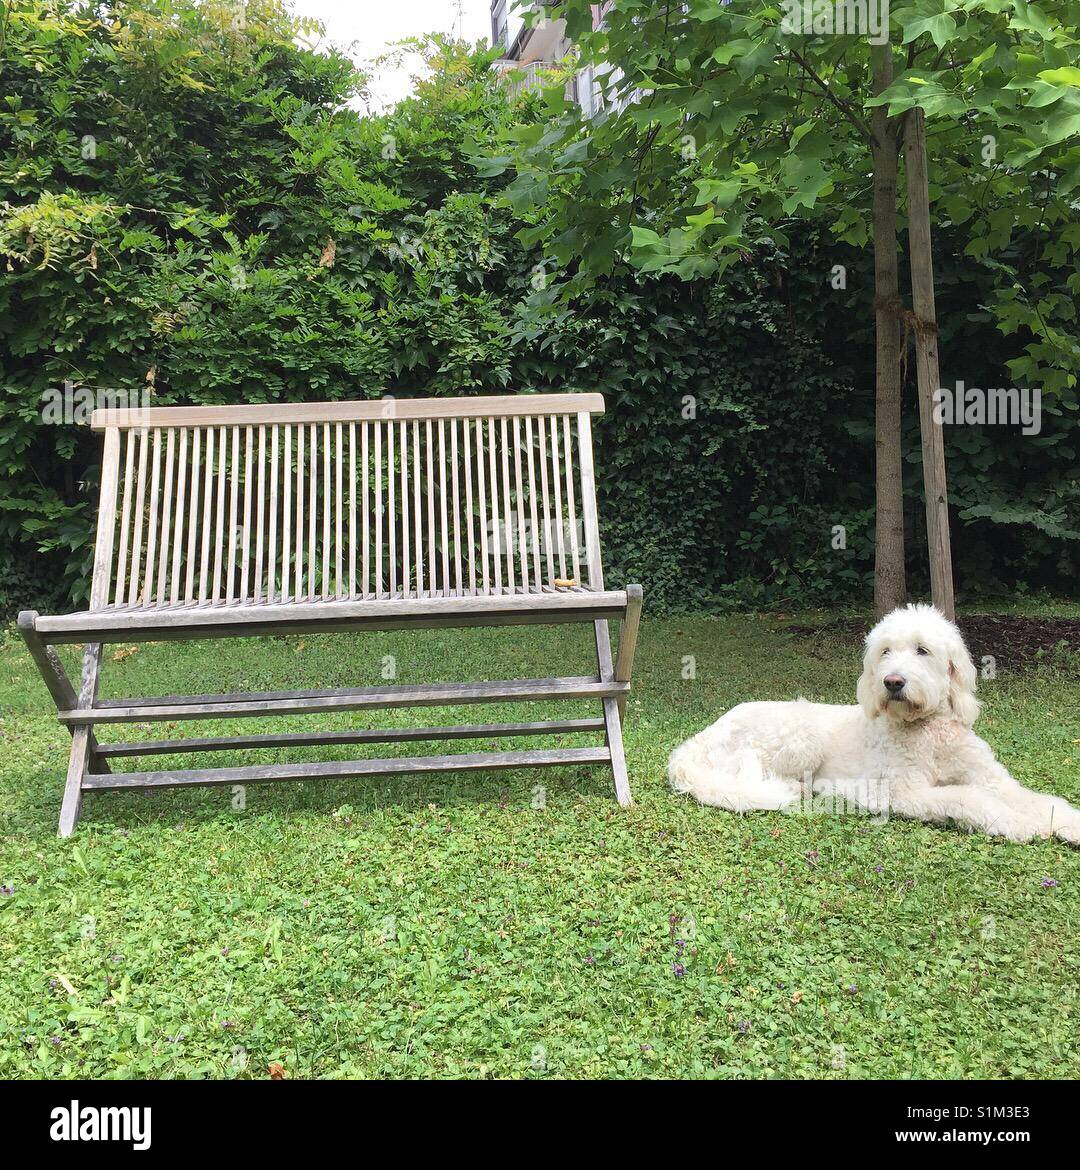 White dog goldendoodle waiting next to a bench on green grass in front of a tree, weisser Hund sitzt entspannt auf grünem Gras vor Baum neben einer leeren Bank in der Natur Stock Photo